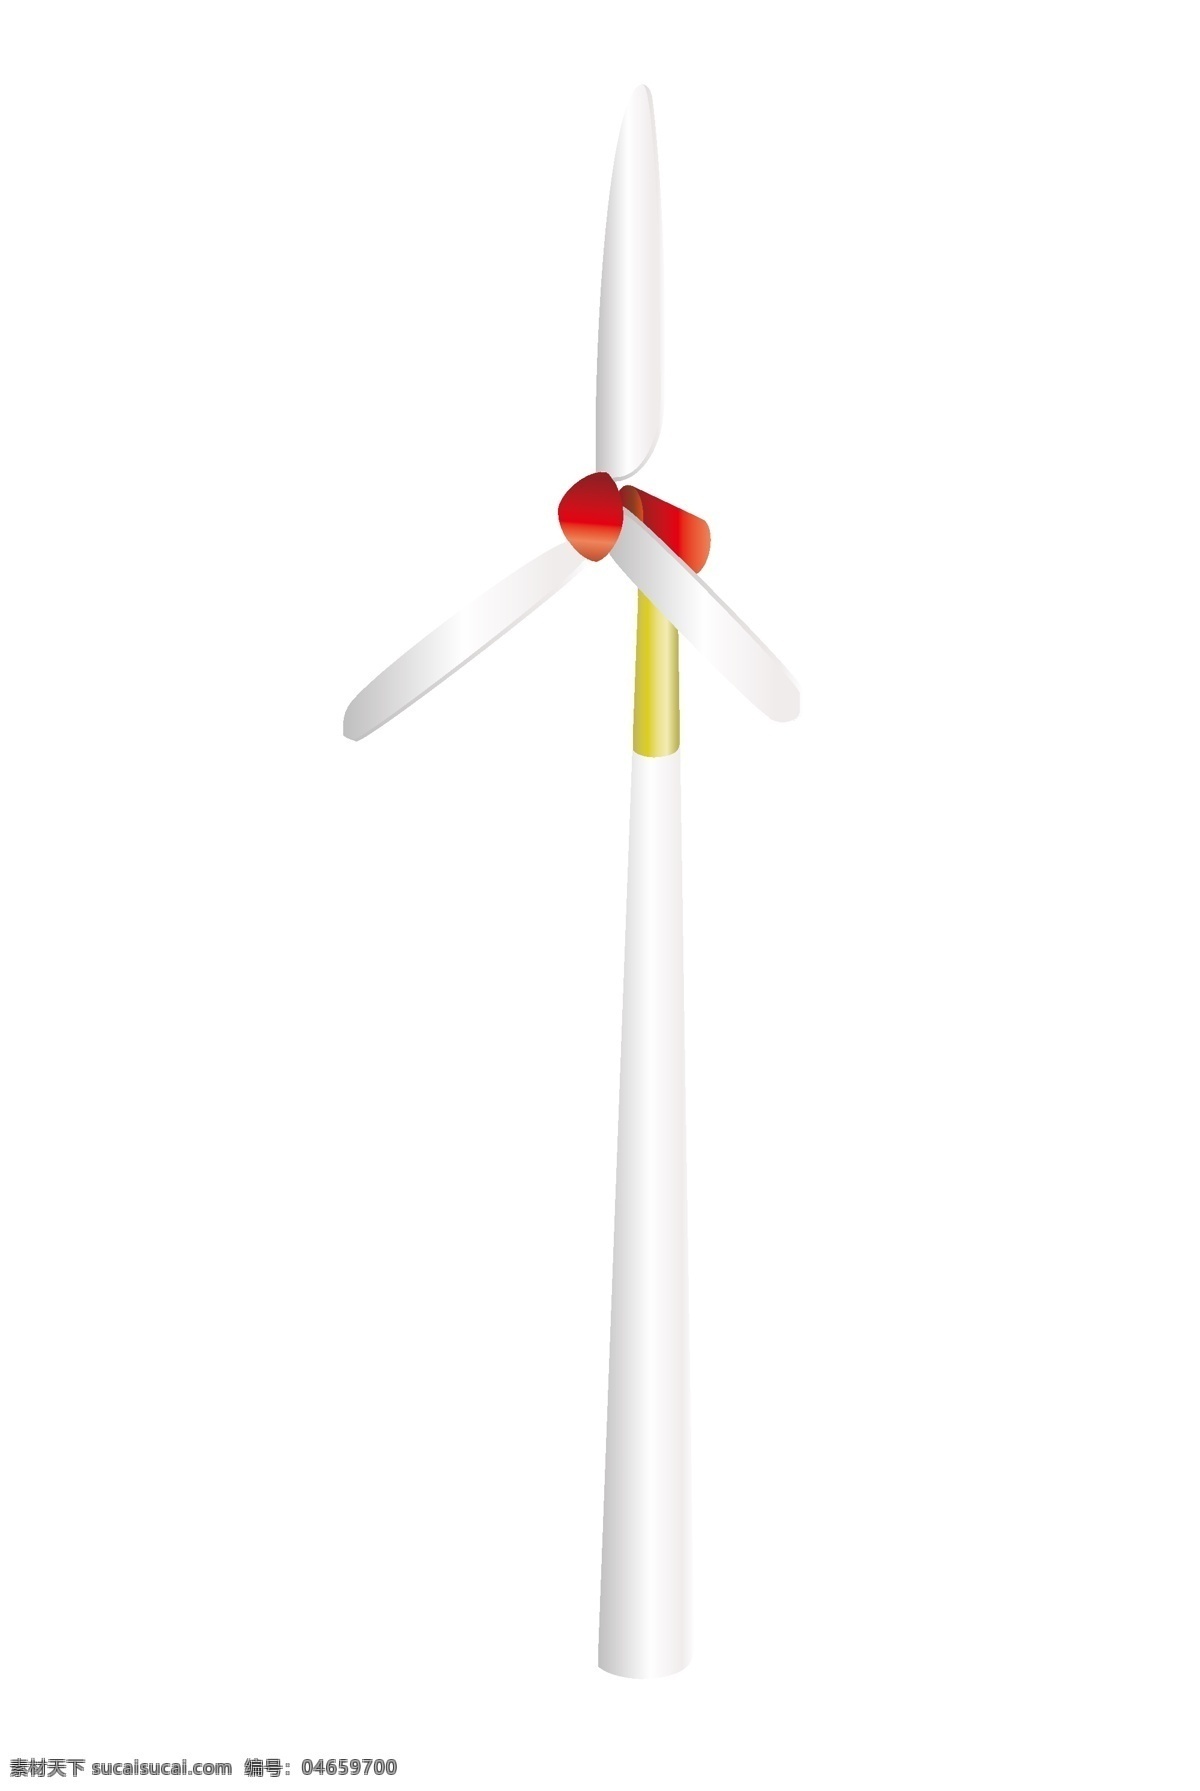 风力 发电 风车 插画 黄色的桅杆 卡通插画 风车插画 扇叶插画 风力发电 风车环保 大大的扇叶